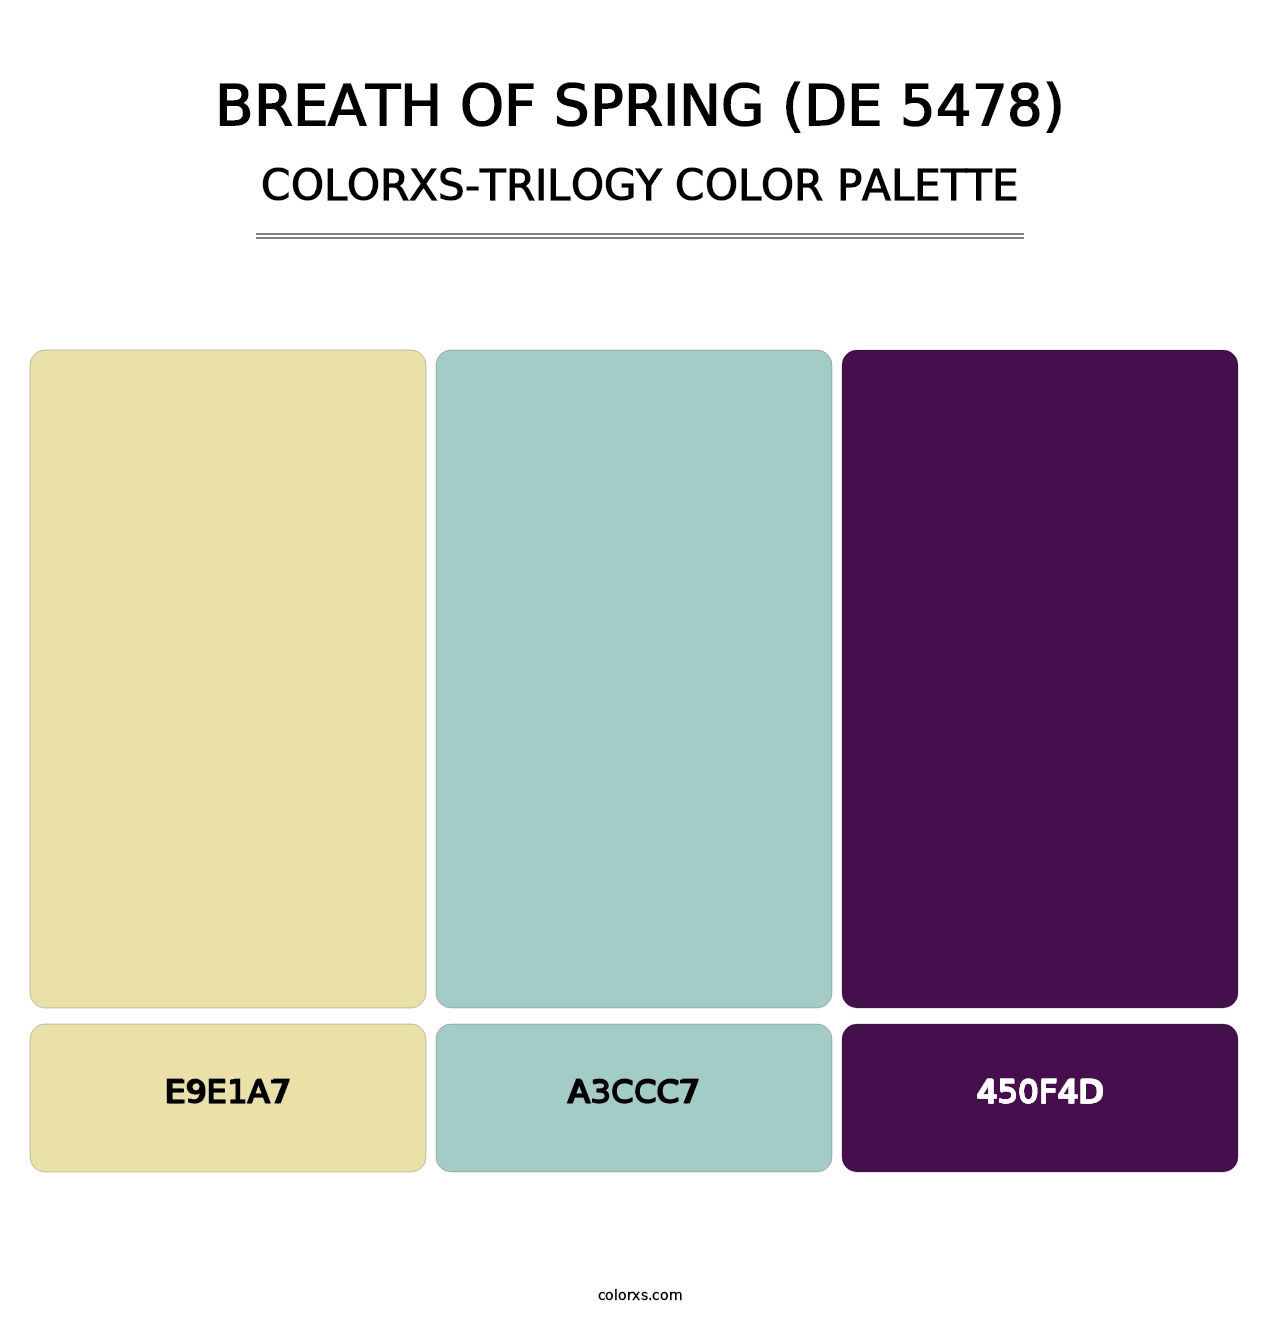 Breath of Spring (DE 5478) - Colorxs Trilogy Palette